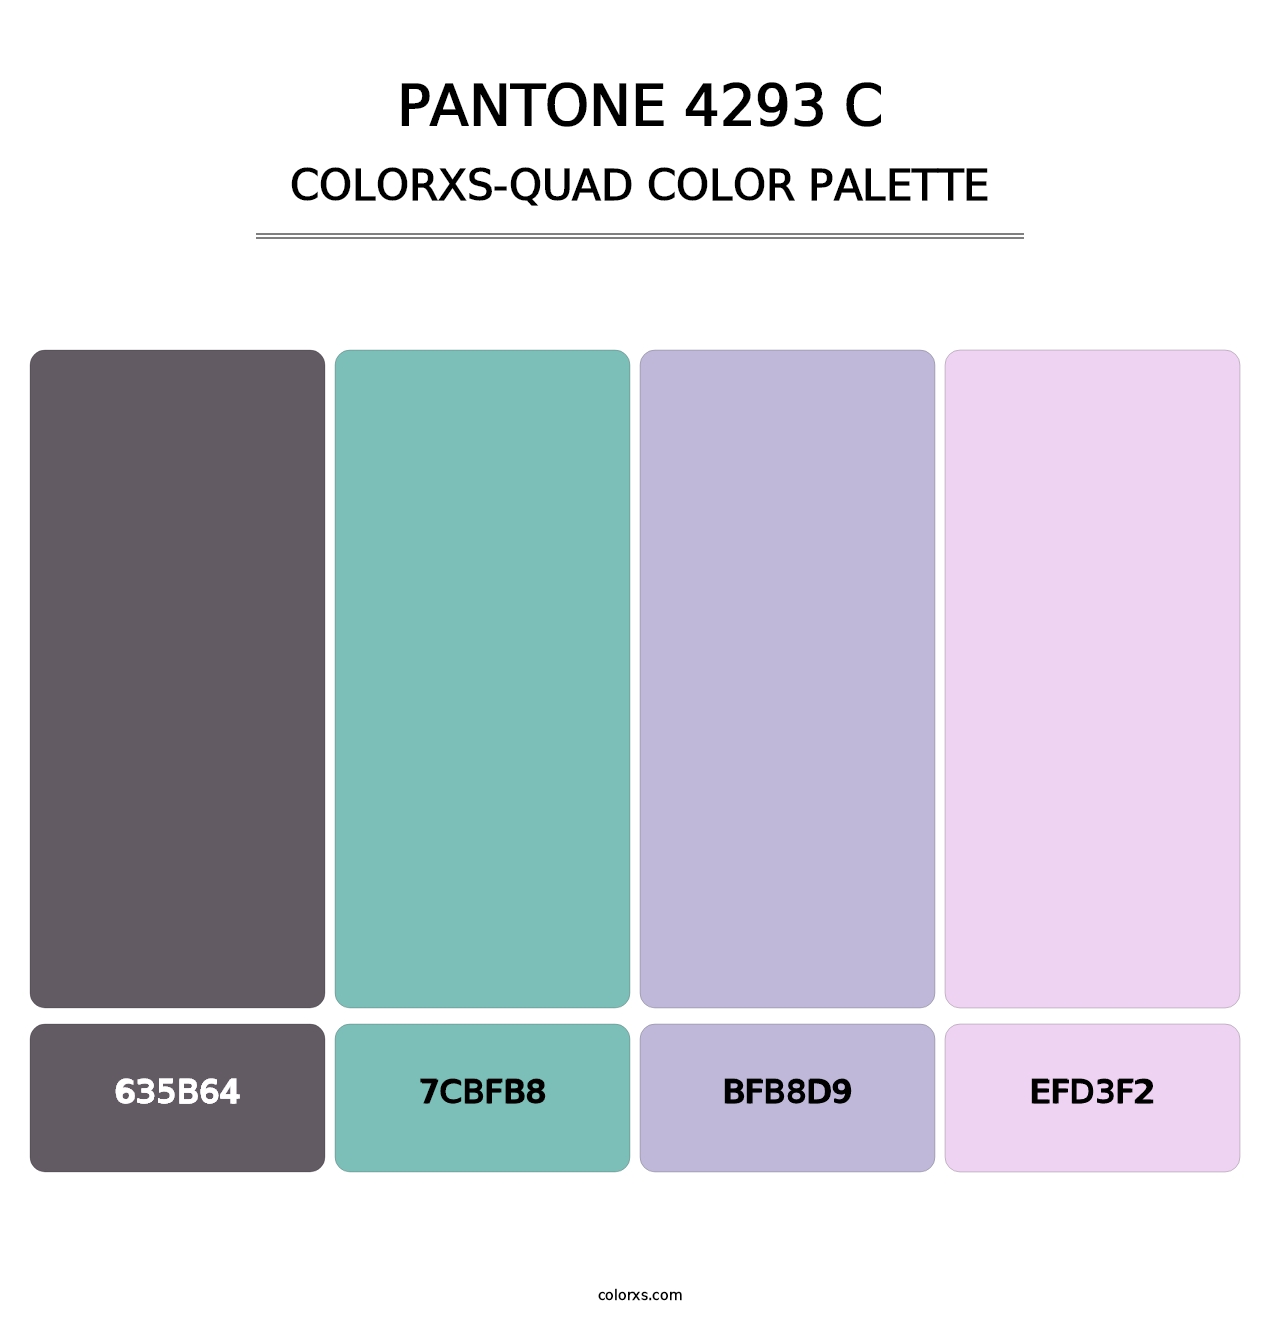 PANTONE 4293 C - Colorxs Quad Palette